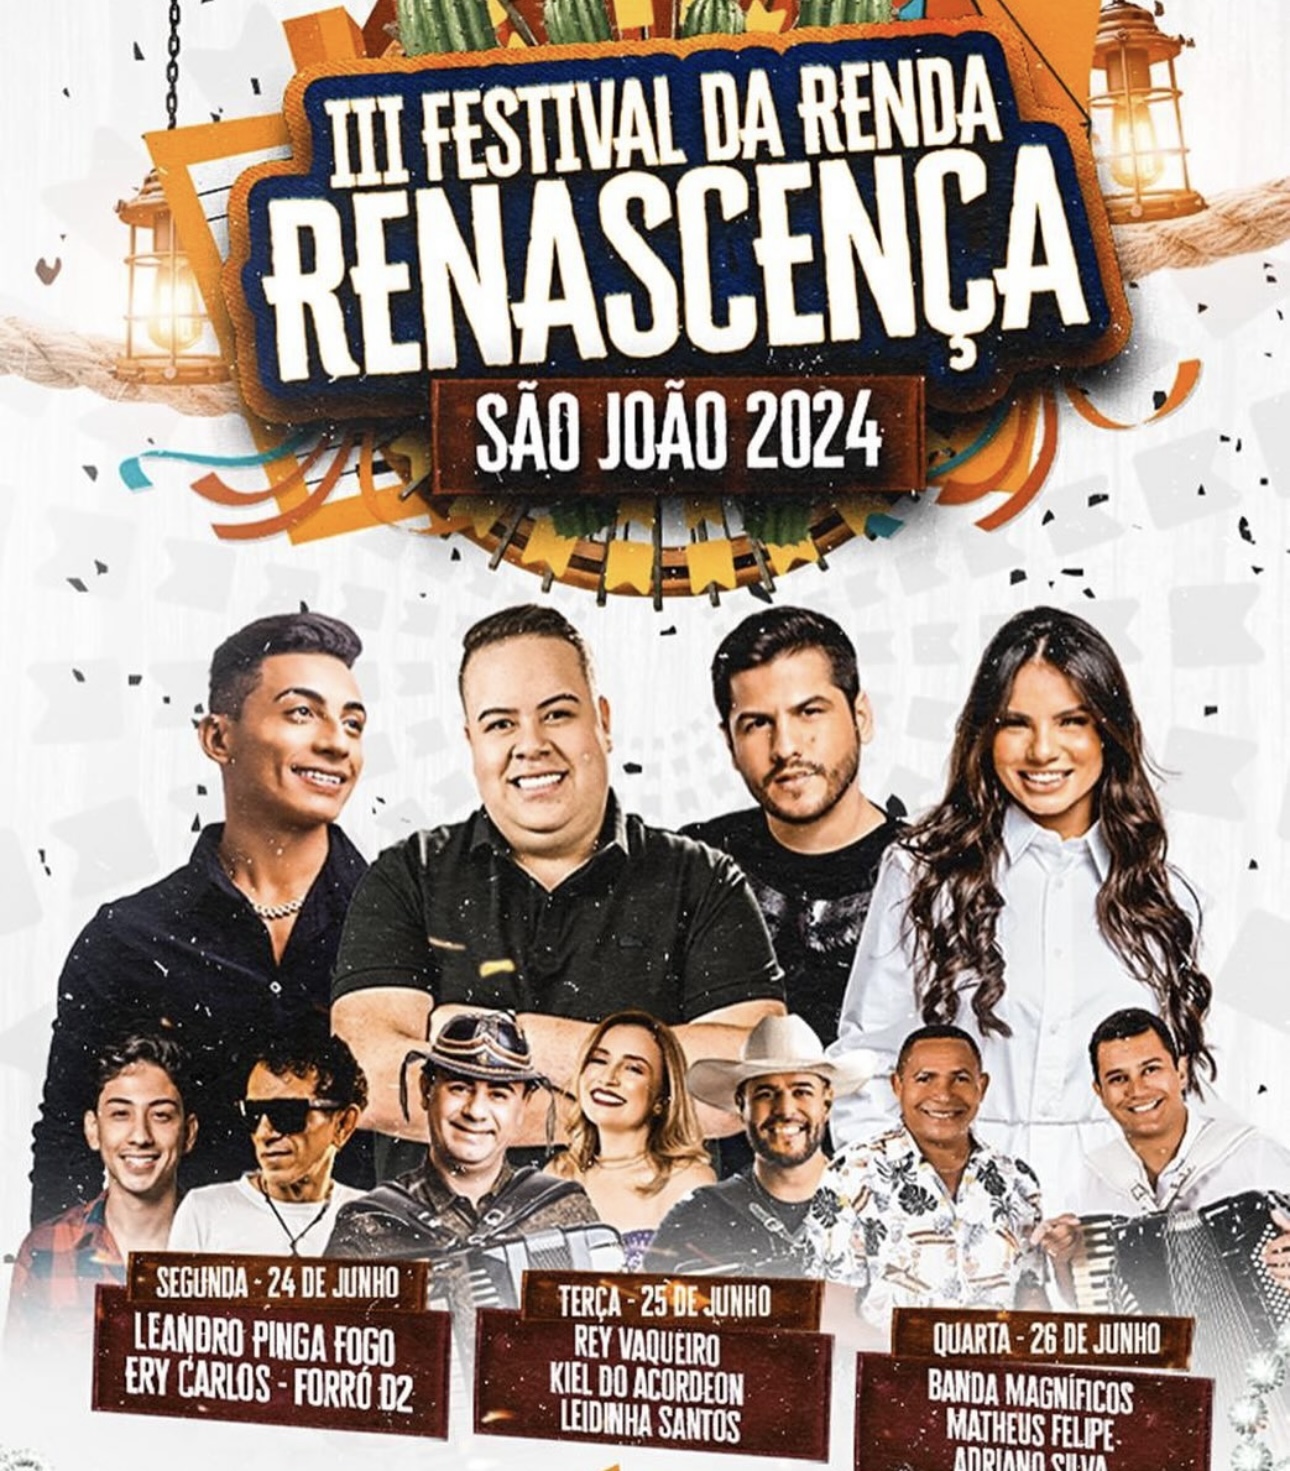 IMG_7293 Prefeitura de São João do Tigre lança programação do III Festival da Renda Renascença